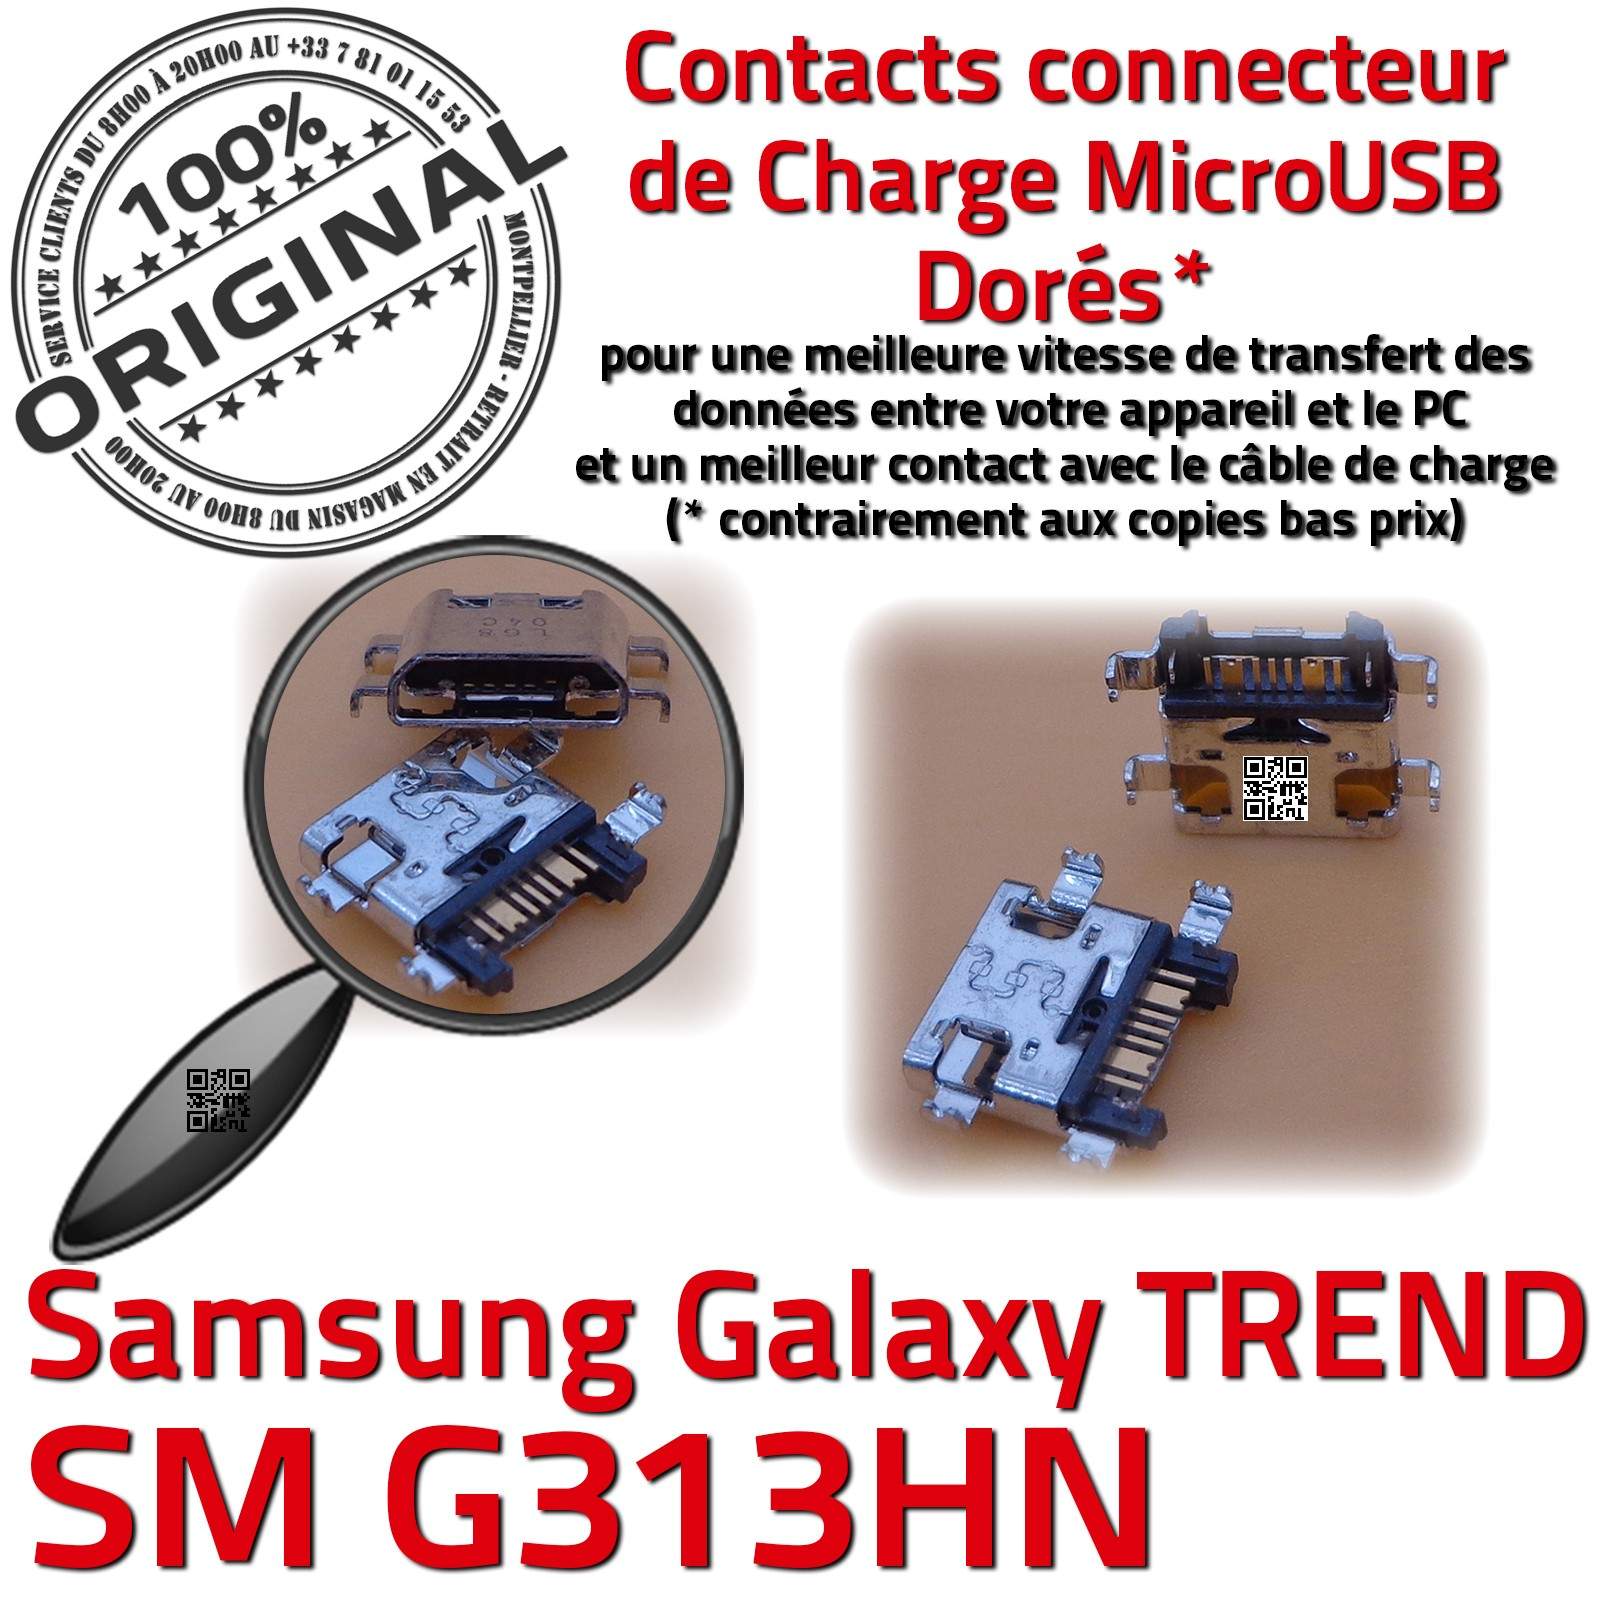 Samsung Galaxy TAB3 SM-T113 Prise de charge MicroUSB Qualité ORIGINAL à  souder Pins Dorés Dock Fiche Connector Chargeur SLOT